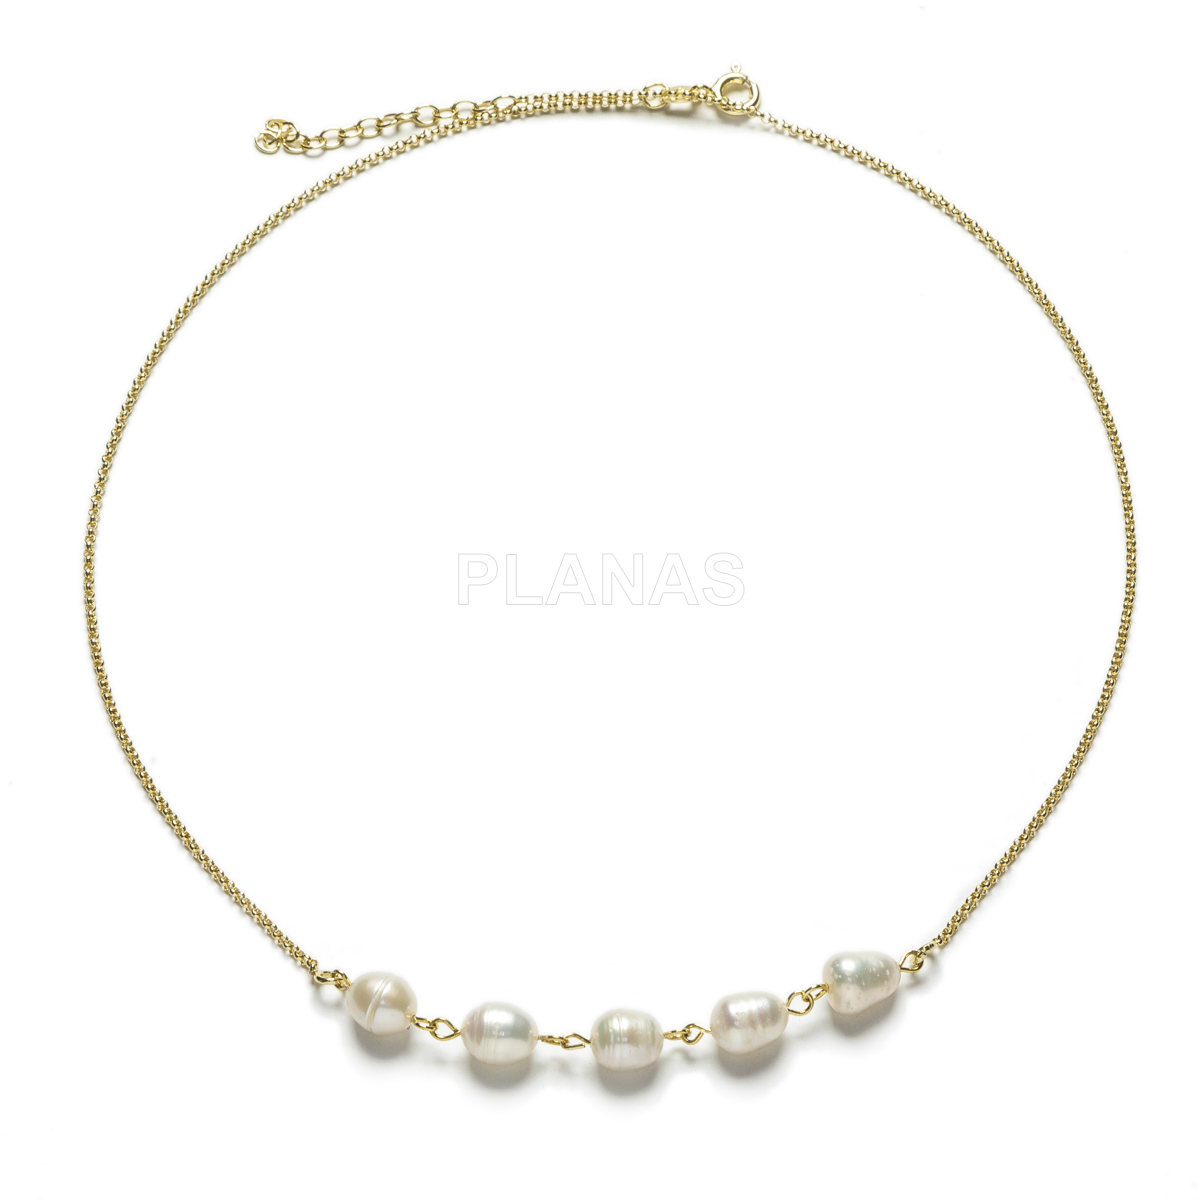 Collar en Plata de Ley y Baño Oro con perlas cultivadas de 6-7mm.